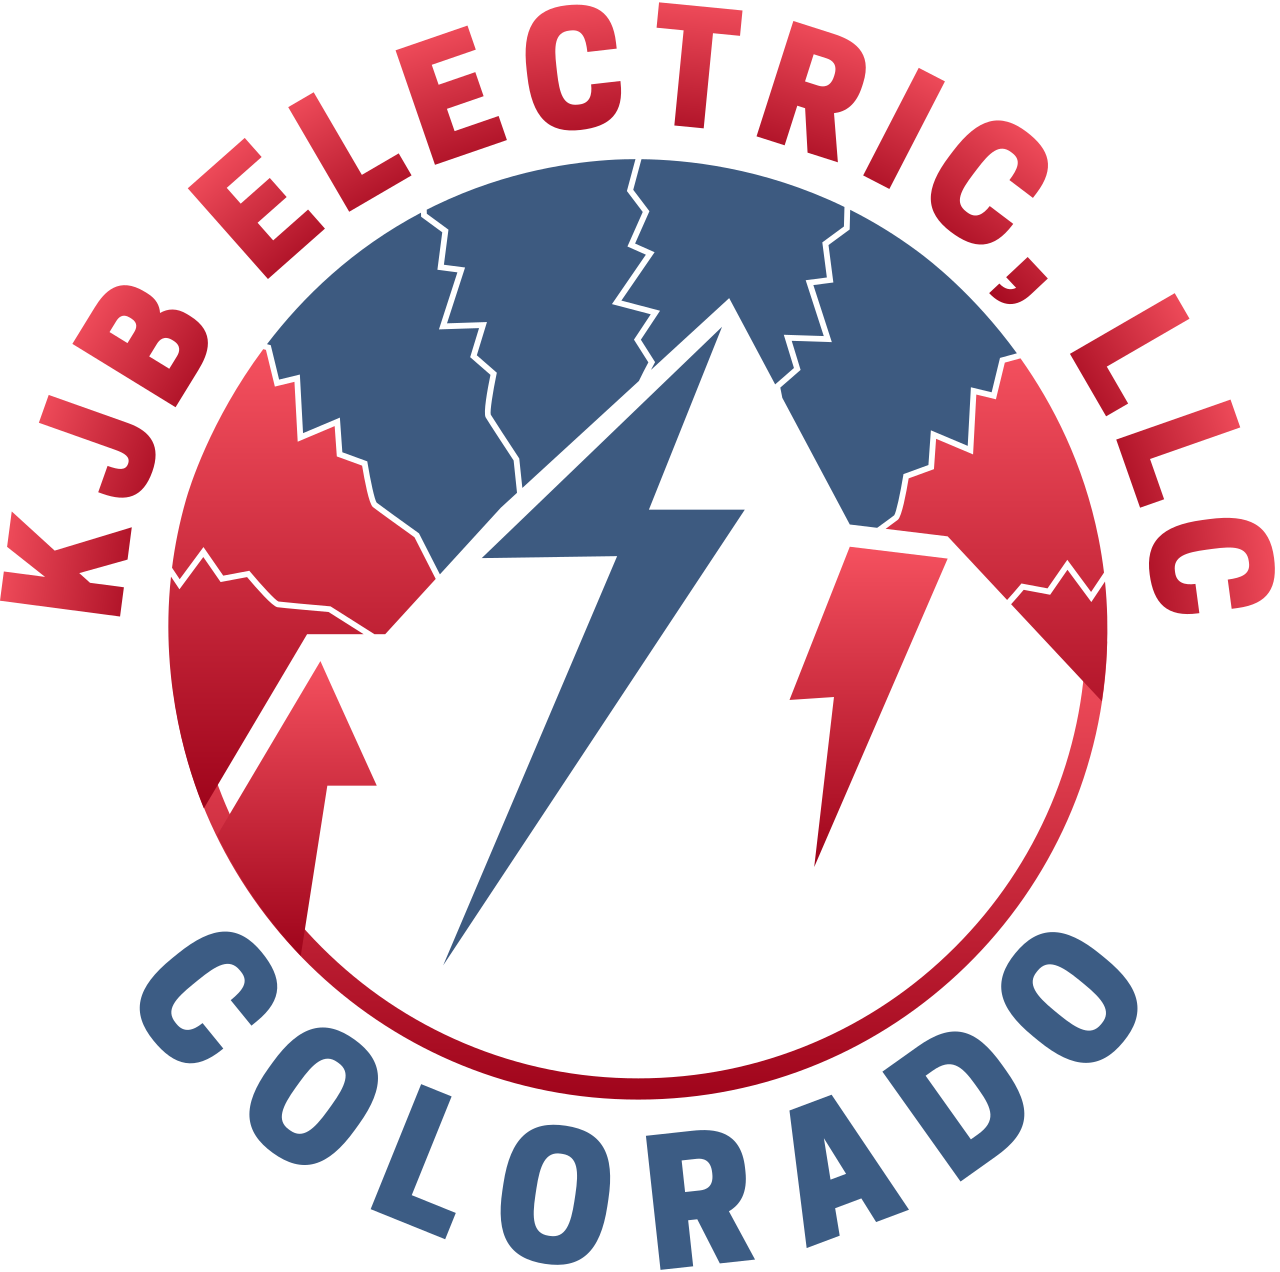 KJB ELECTRIC, LLC's logo